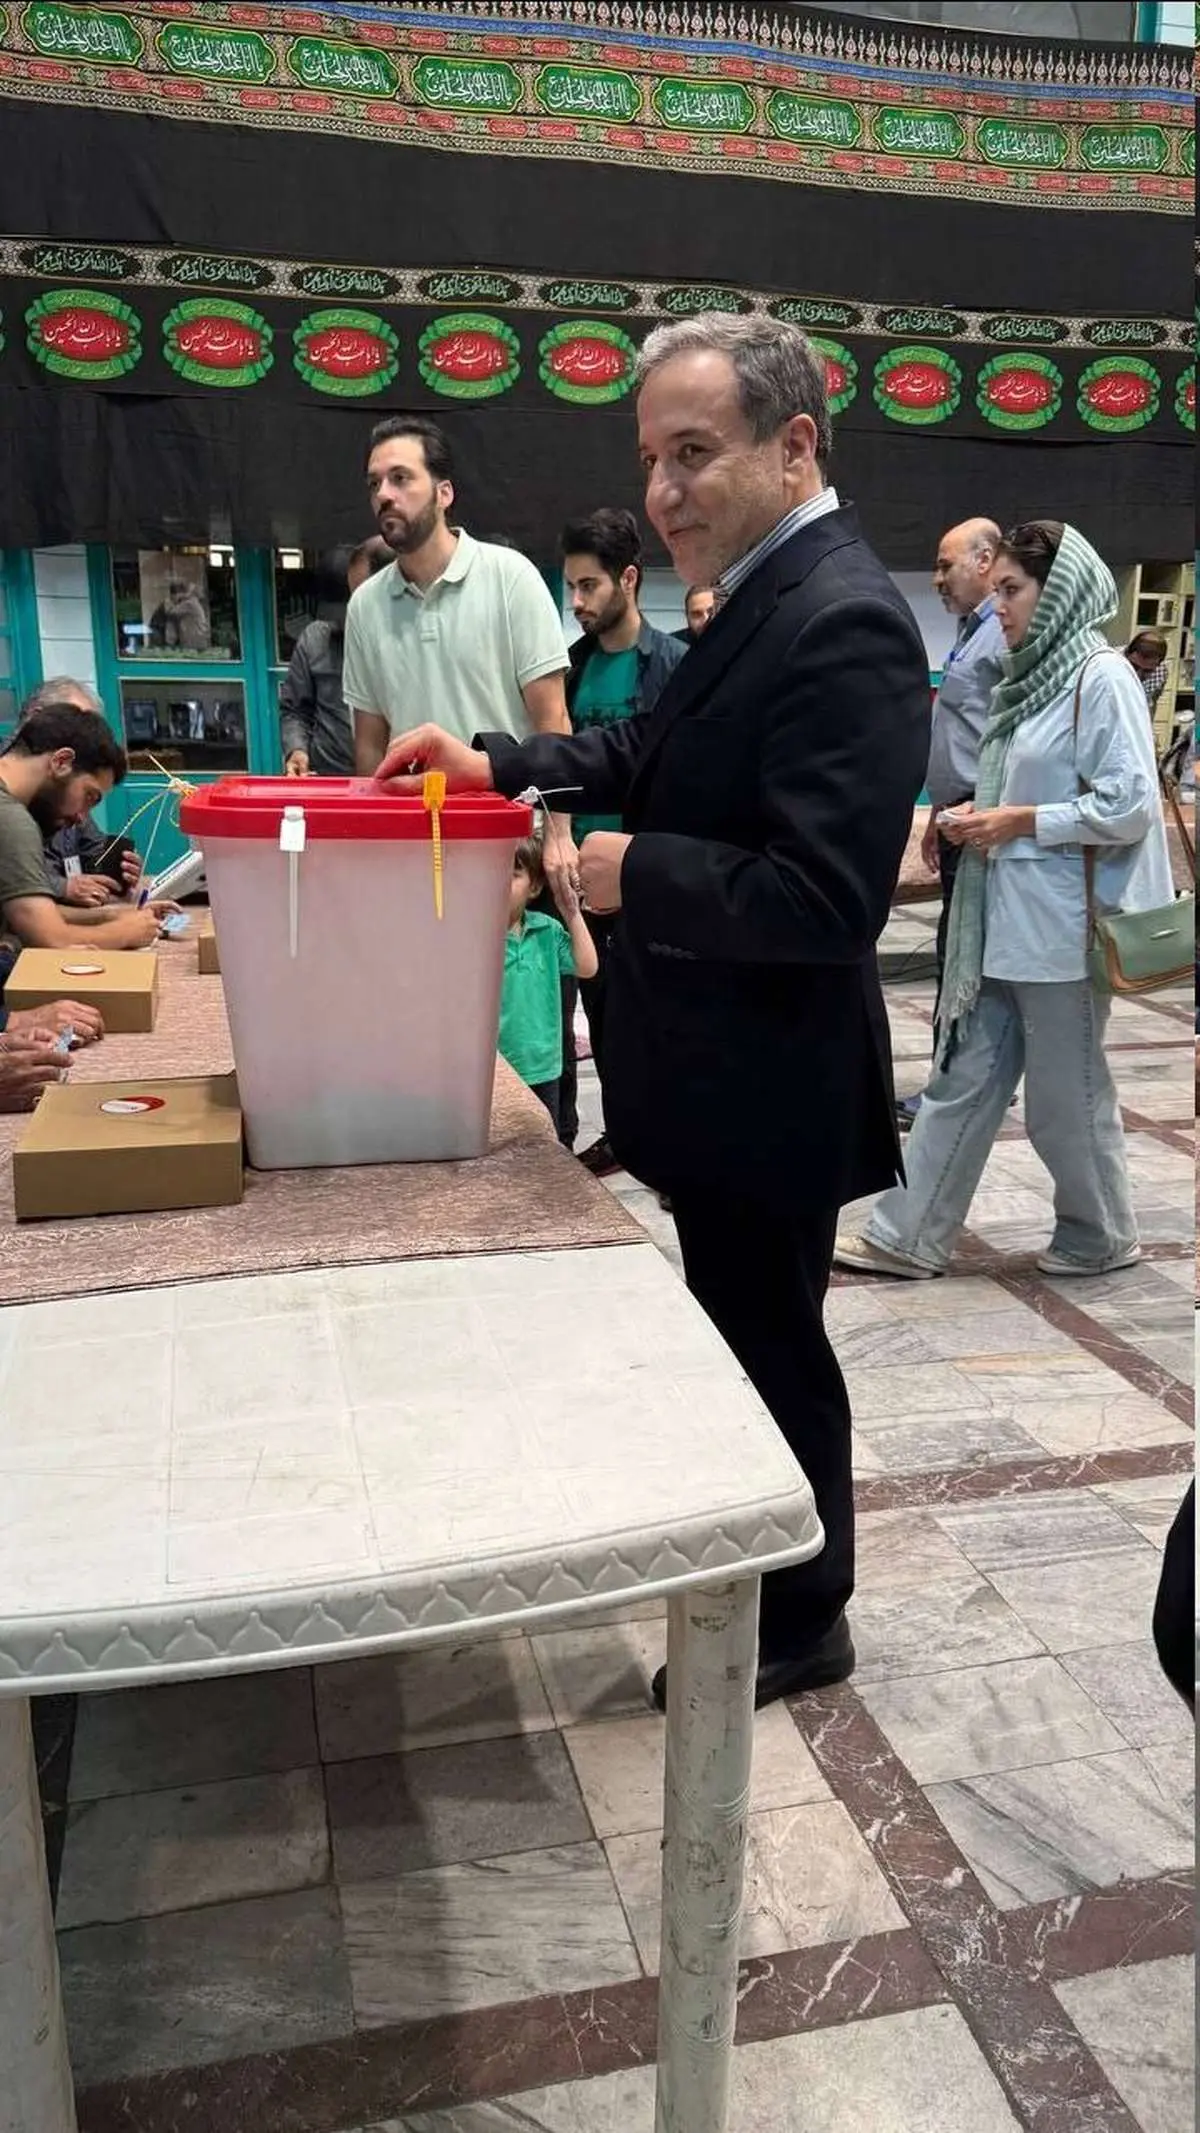 سید عباس عراقچی رای خود را به صندوق انداخت/ هیچگاه «رای من، رای تو، رای ما» تا این حد تاثیرگذار نبوده است